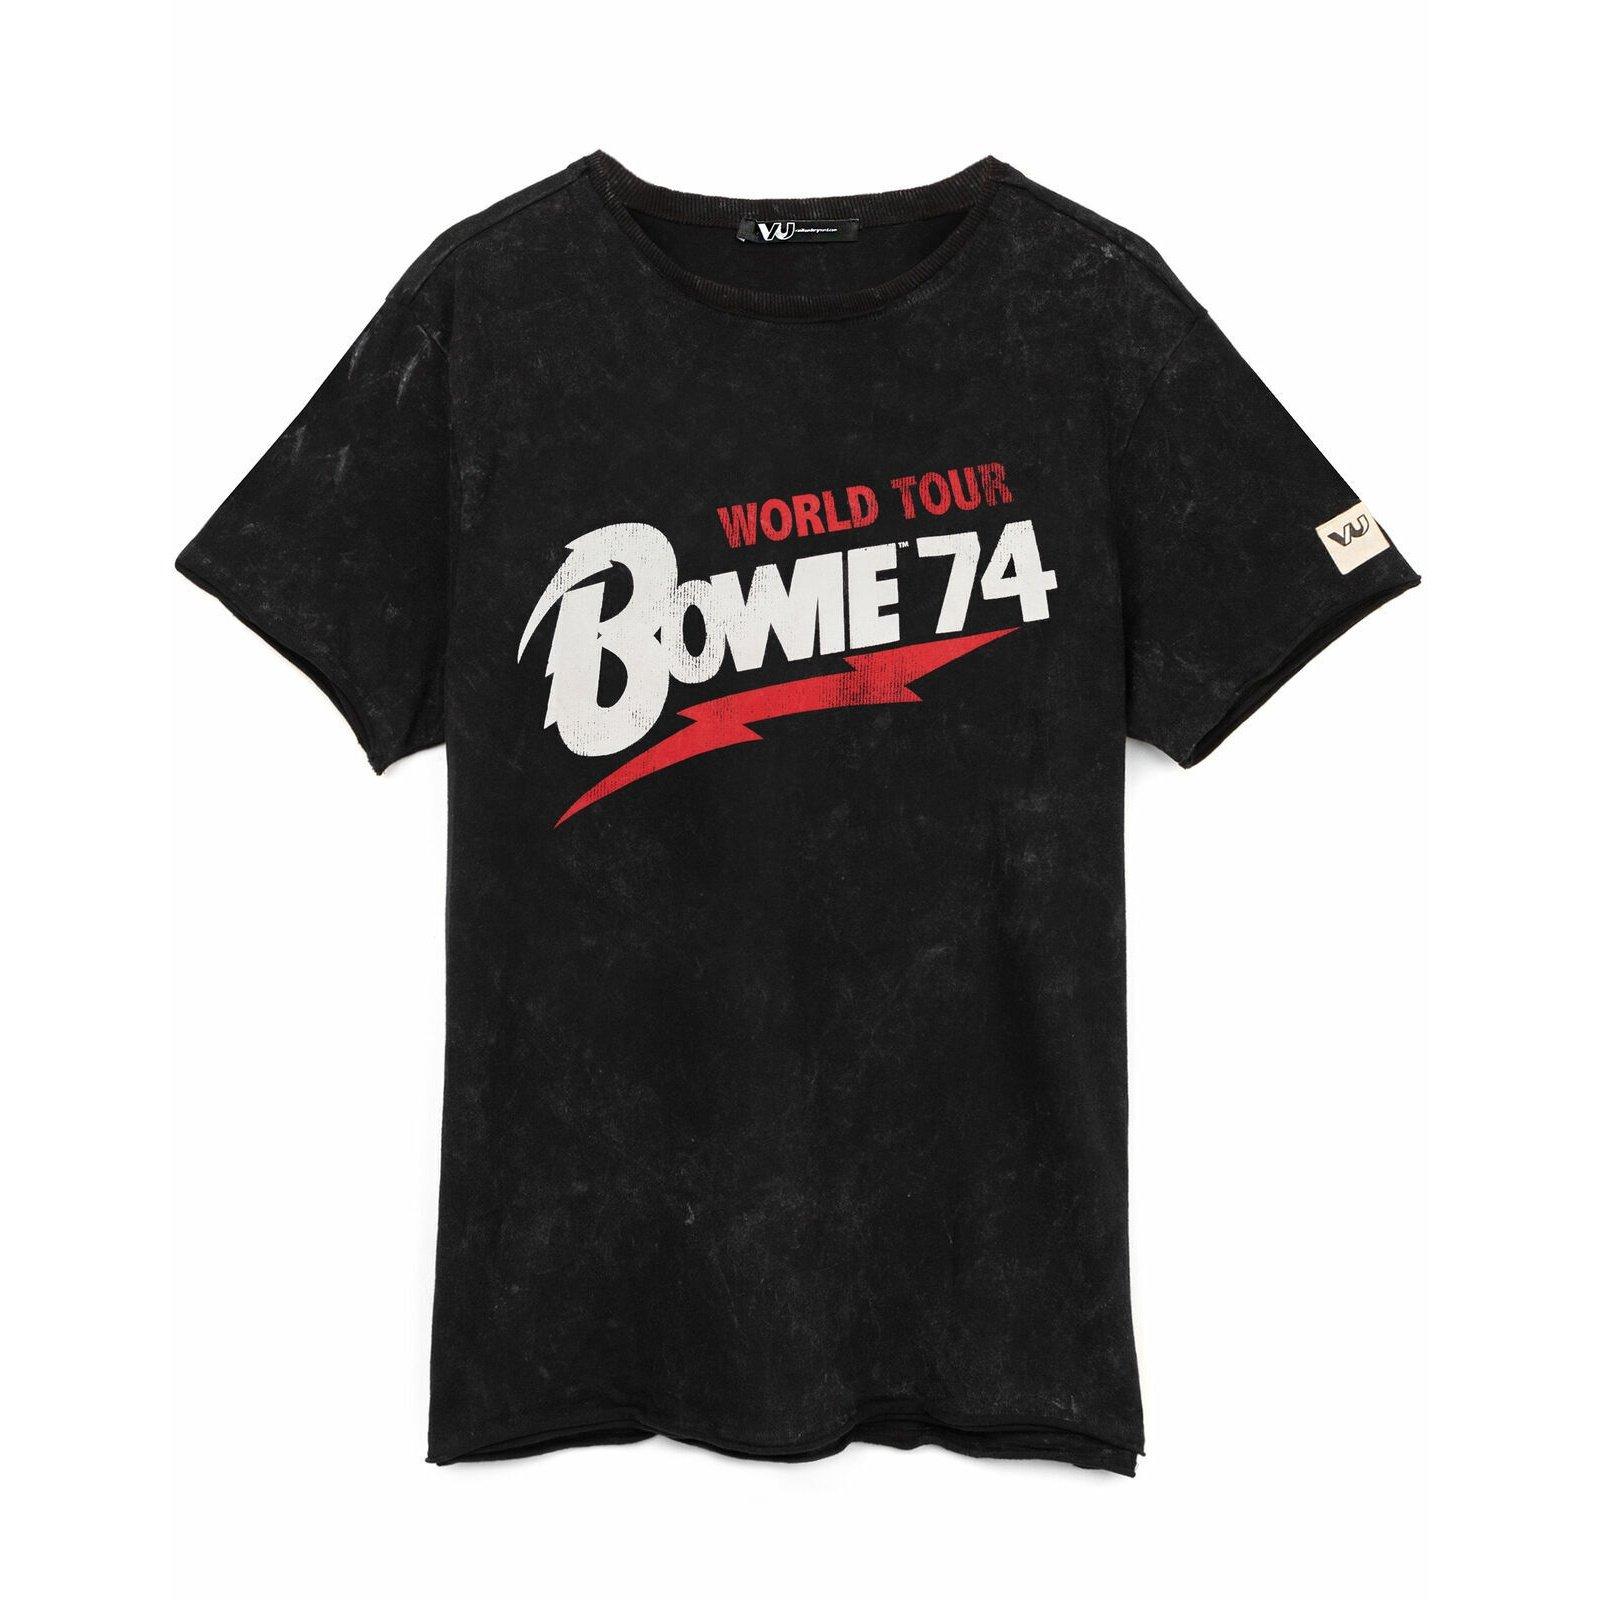 1974 World Tour Tshirt Damen Schwarz XL von David Bowie